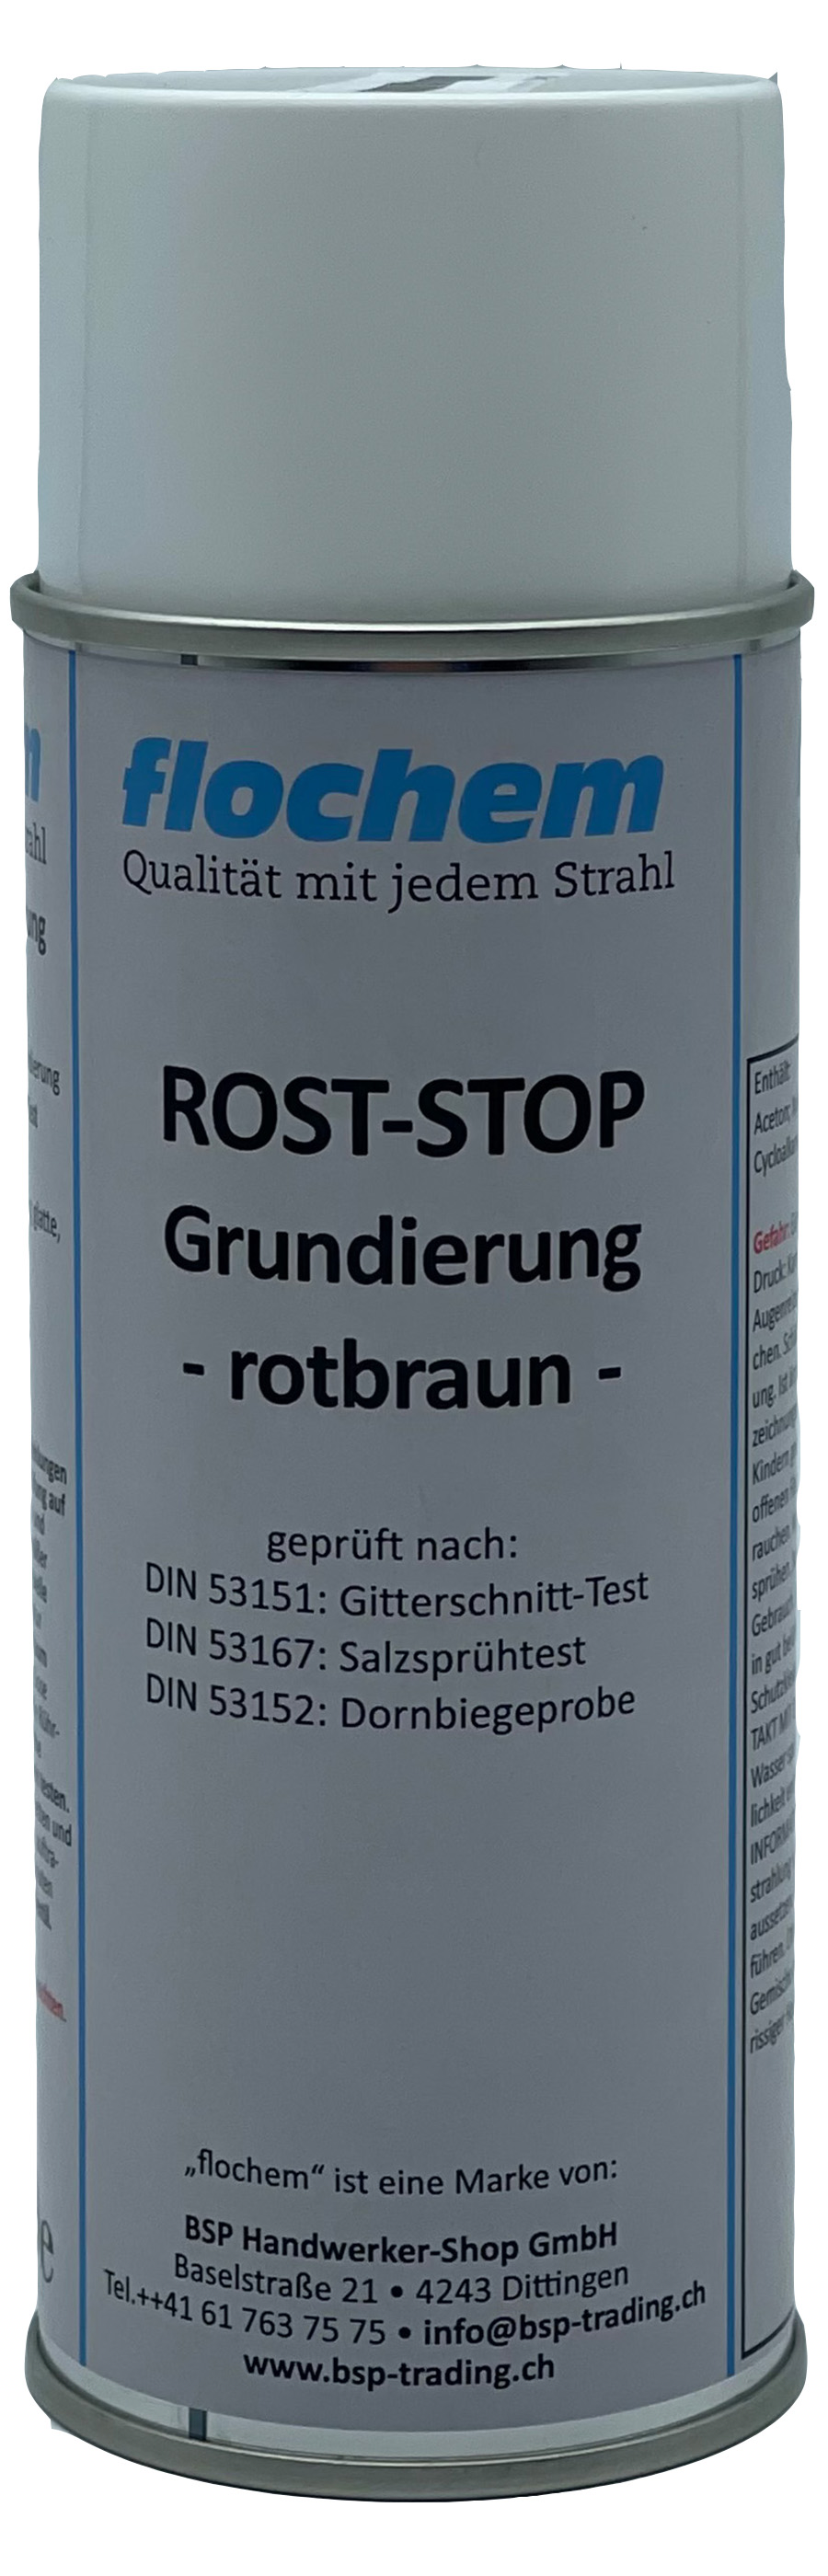 ROST-STOP Grundierung rotbraun 400ml